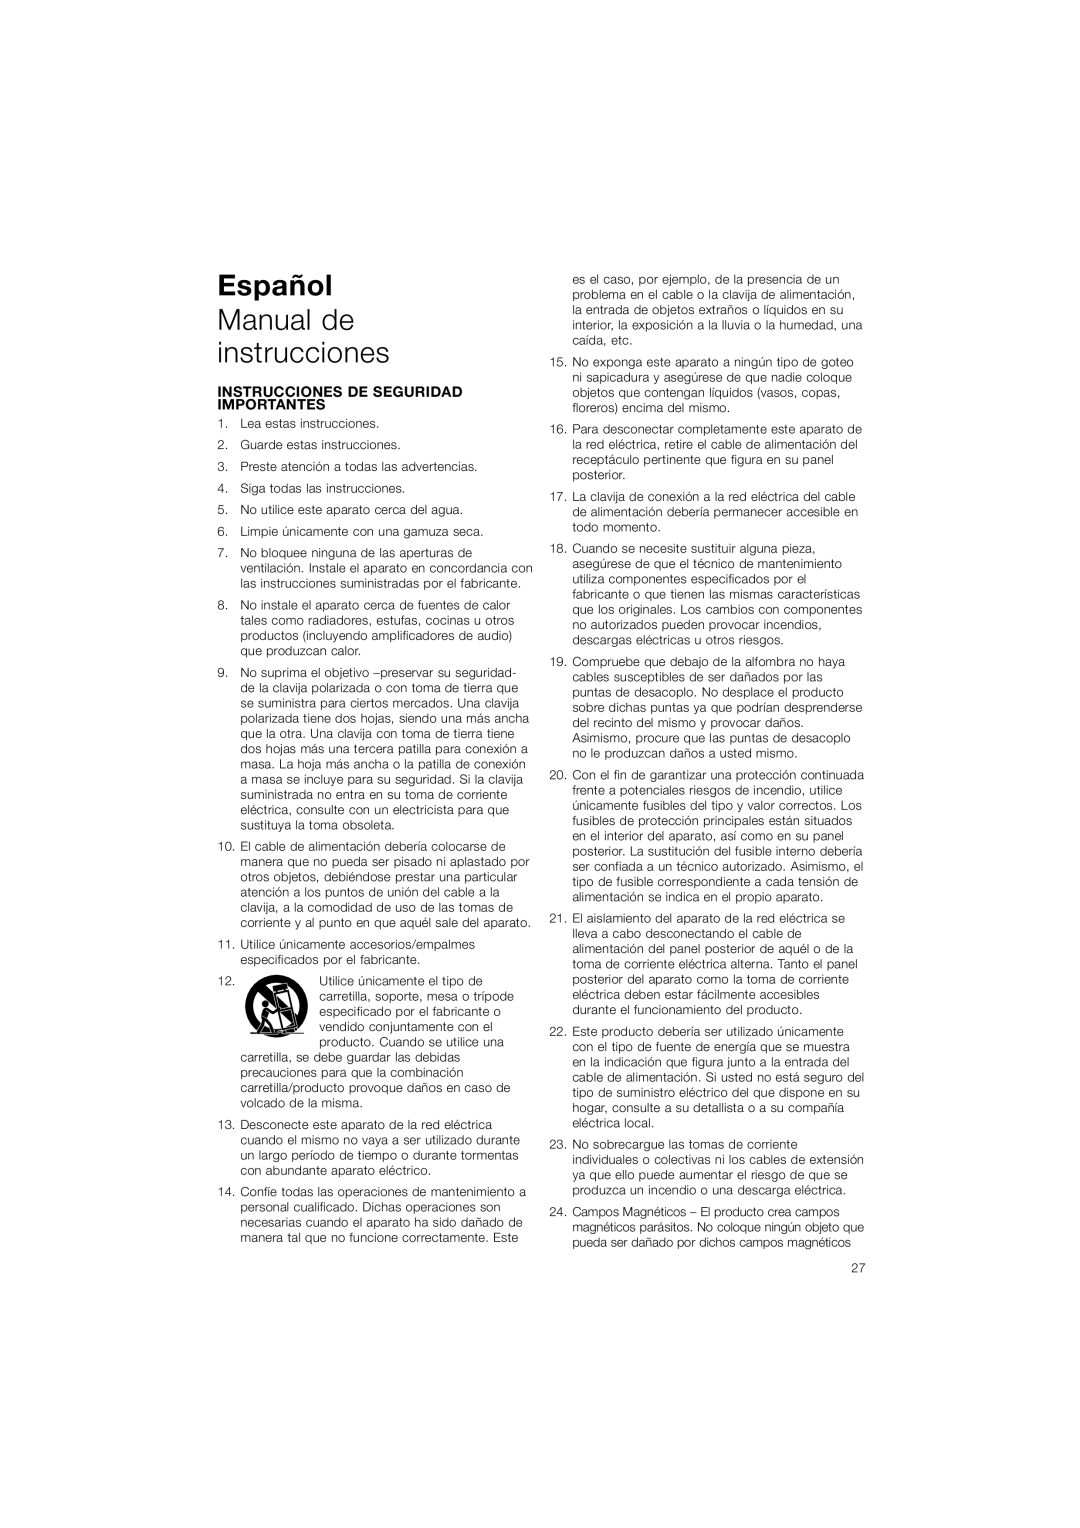 Bowers & Wilkins ASW608, ASW610XP owner manual Español Manual de instrucciones, Instrucciones De Seguridad Importantes 